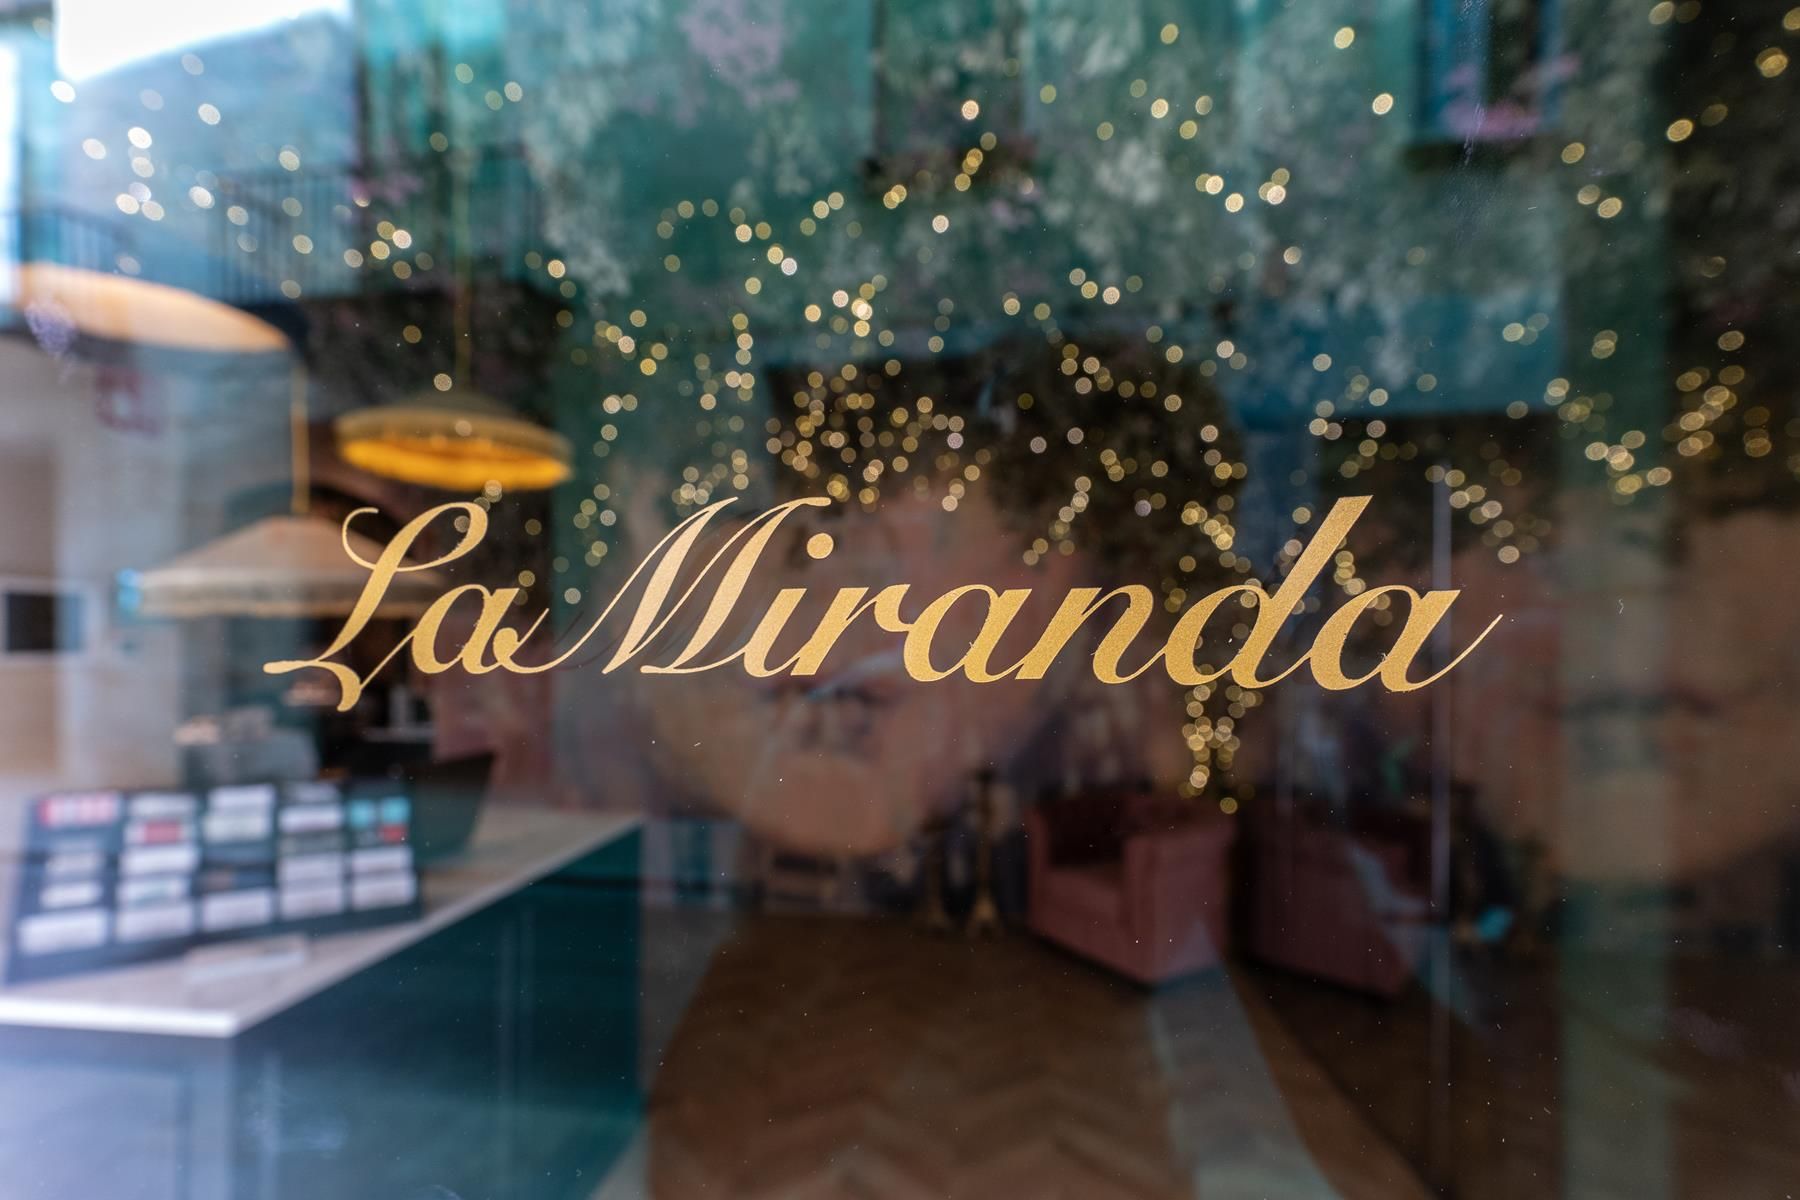 La Miranda obre les seves portes: descobreix un restaurant únic al cor de Girona